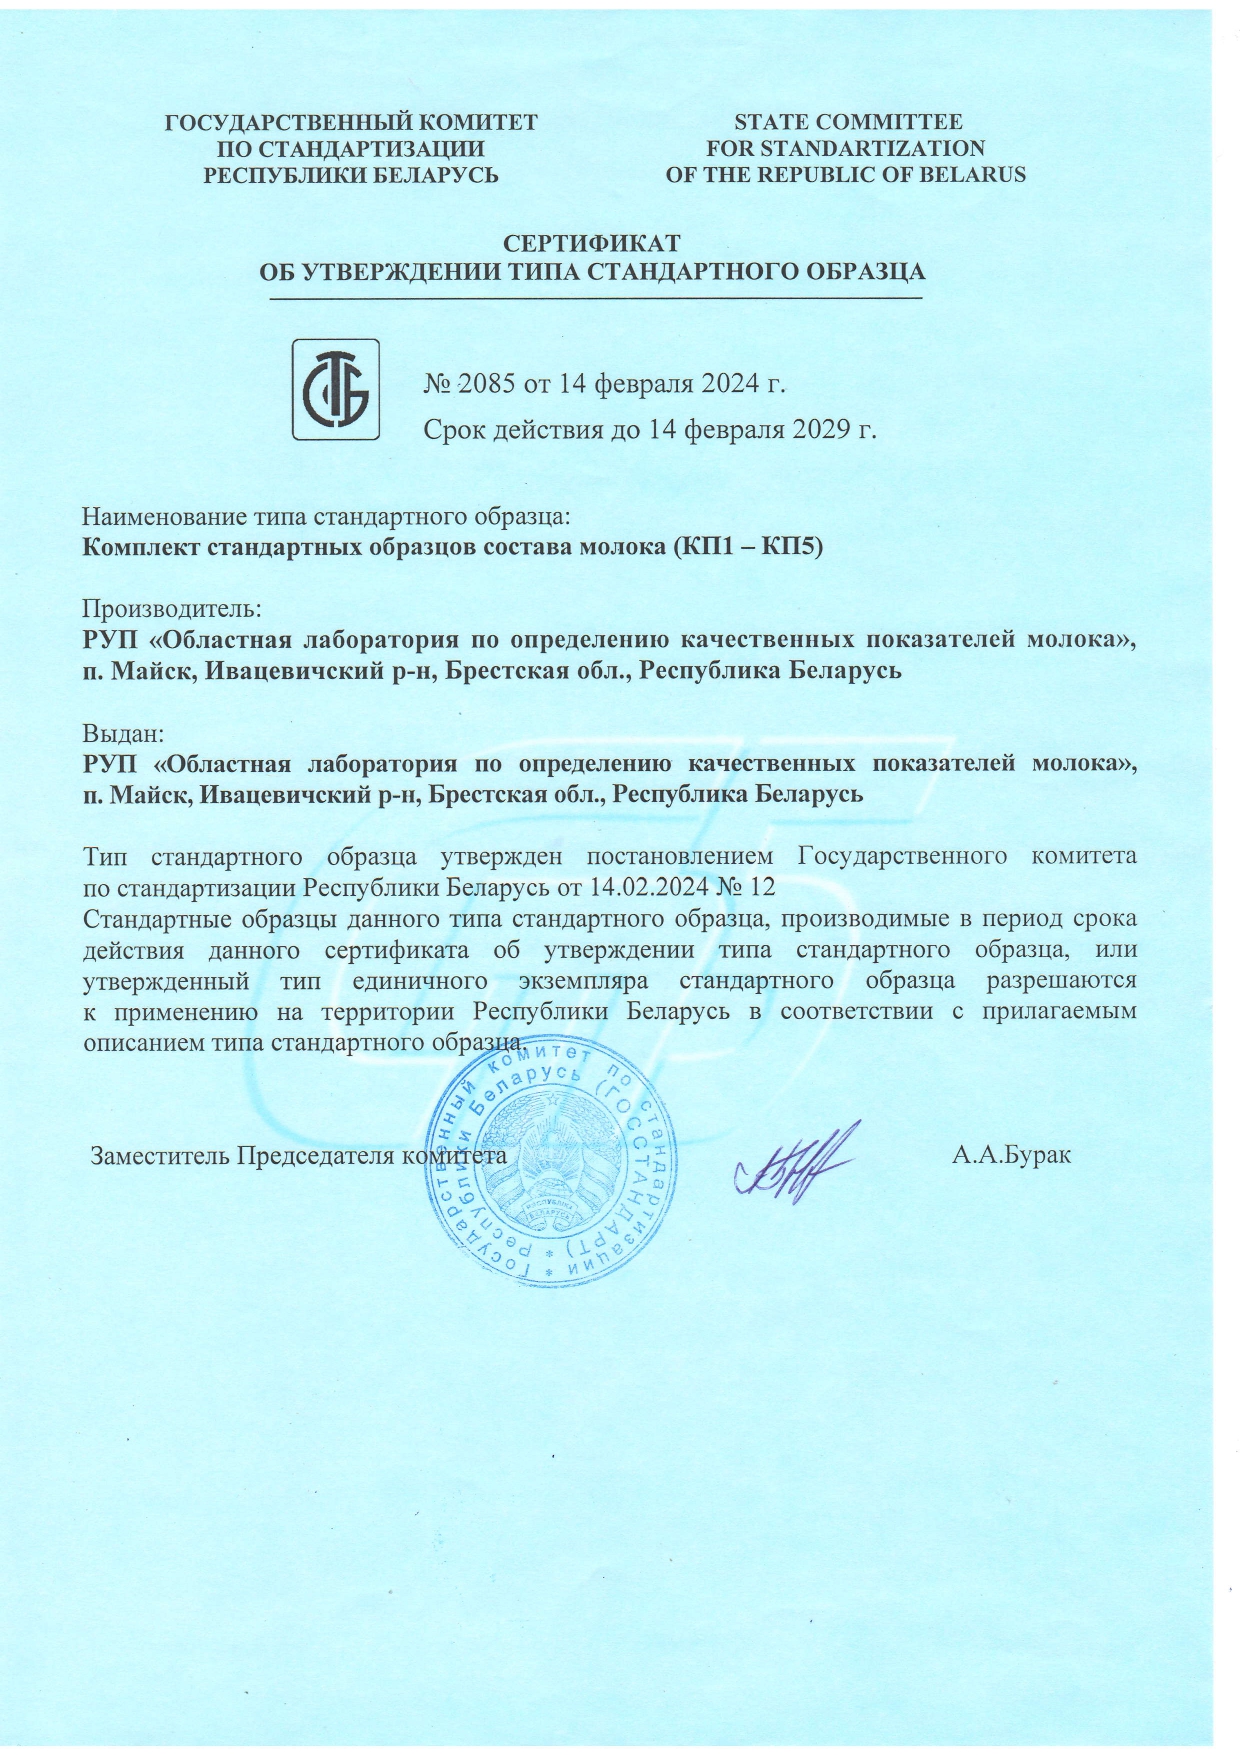 Сертификат об утверждении типа стандартного образца №2085